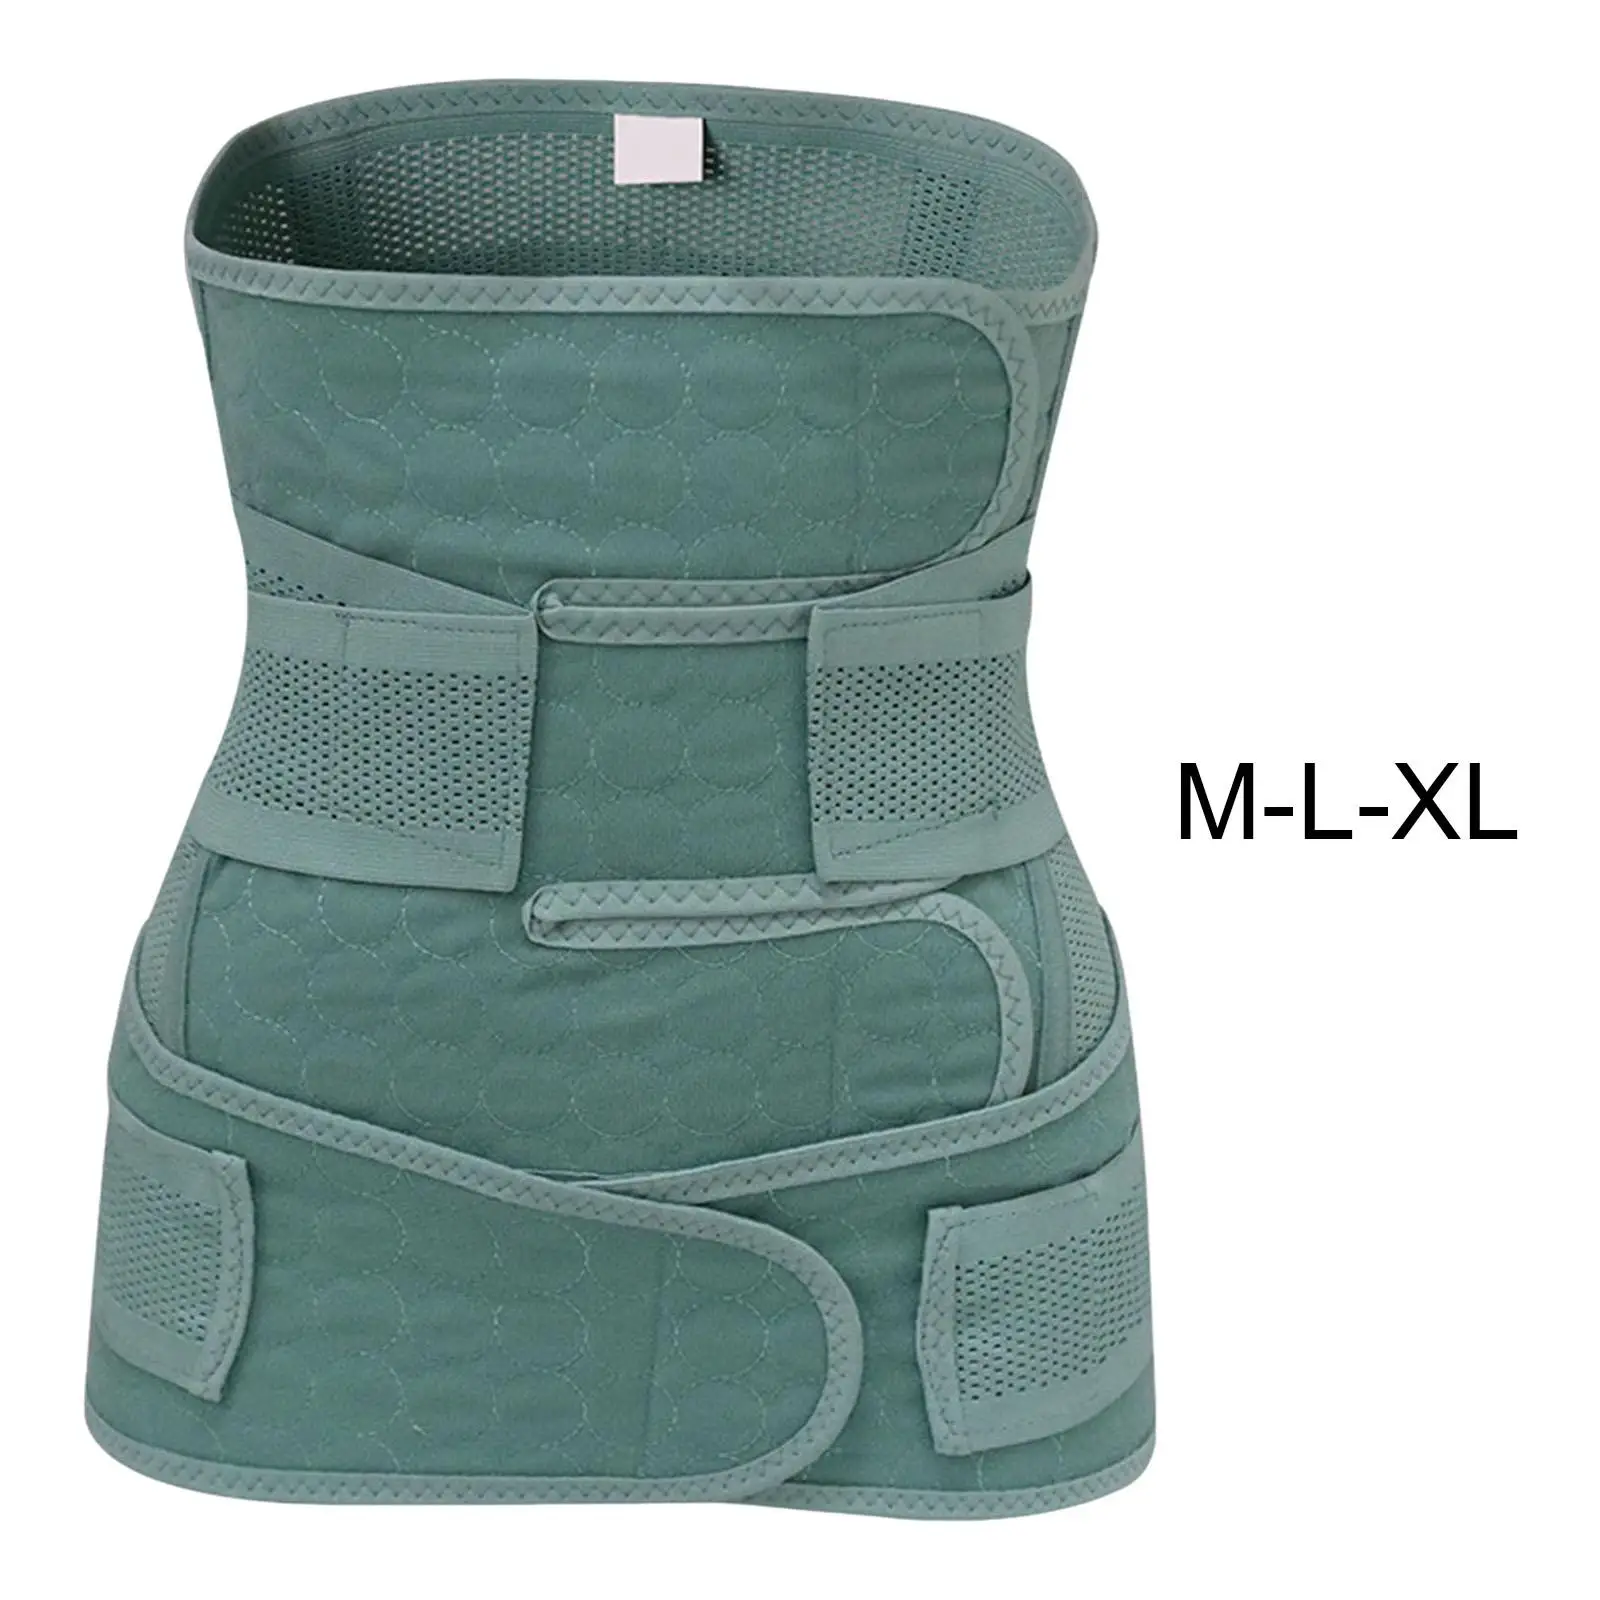 Postpartum Support Multifunctional Adjustable Waist Belt for Rest